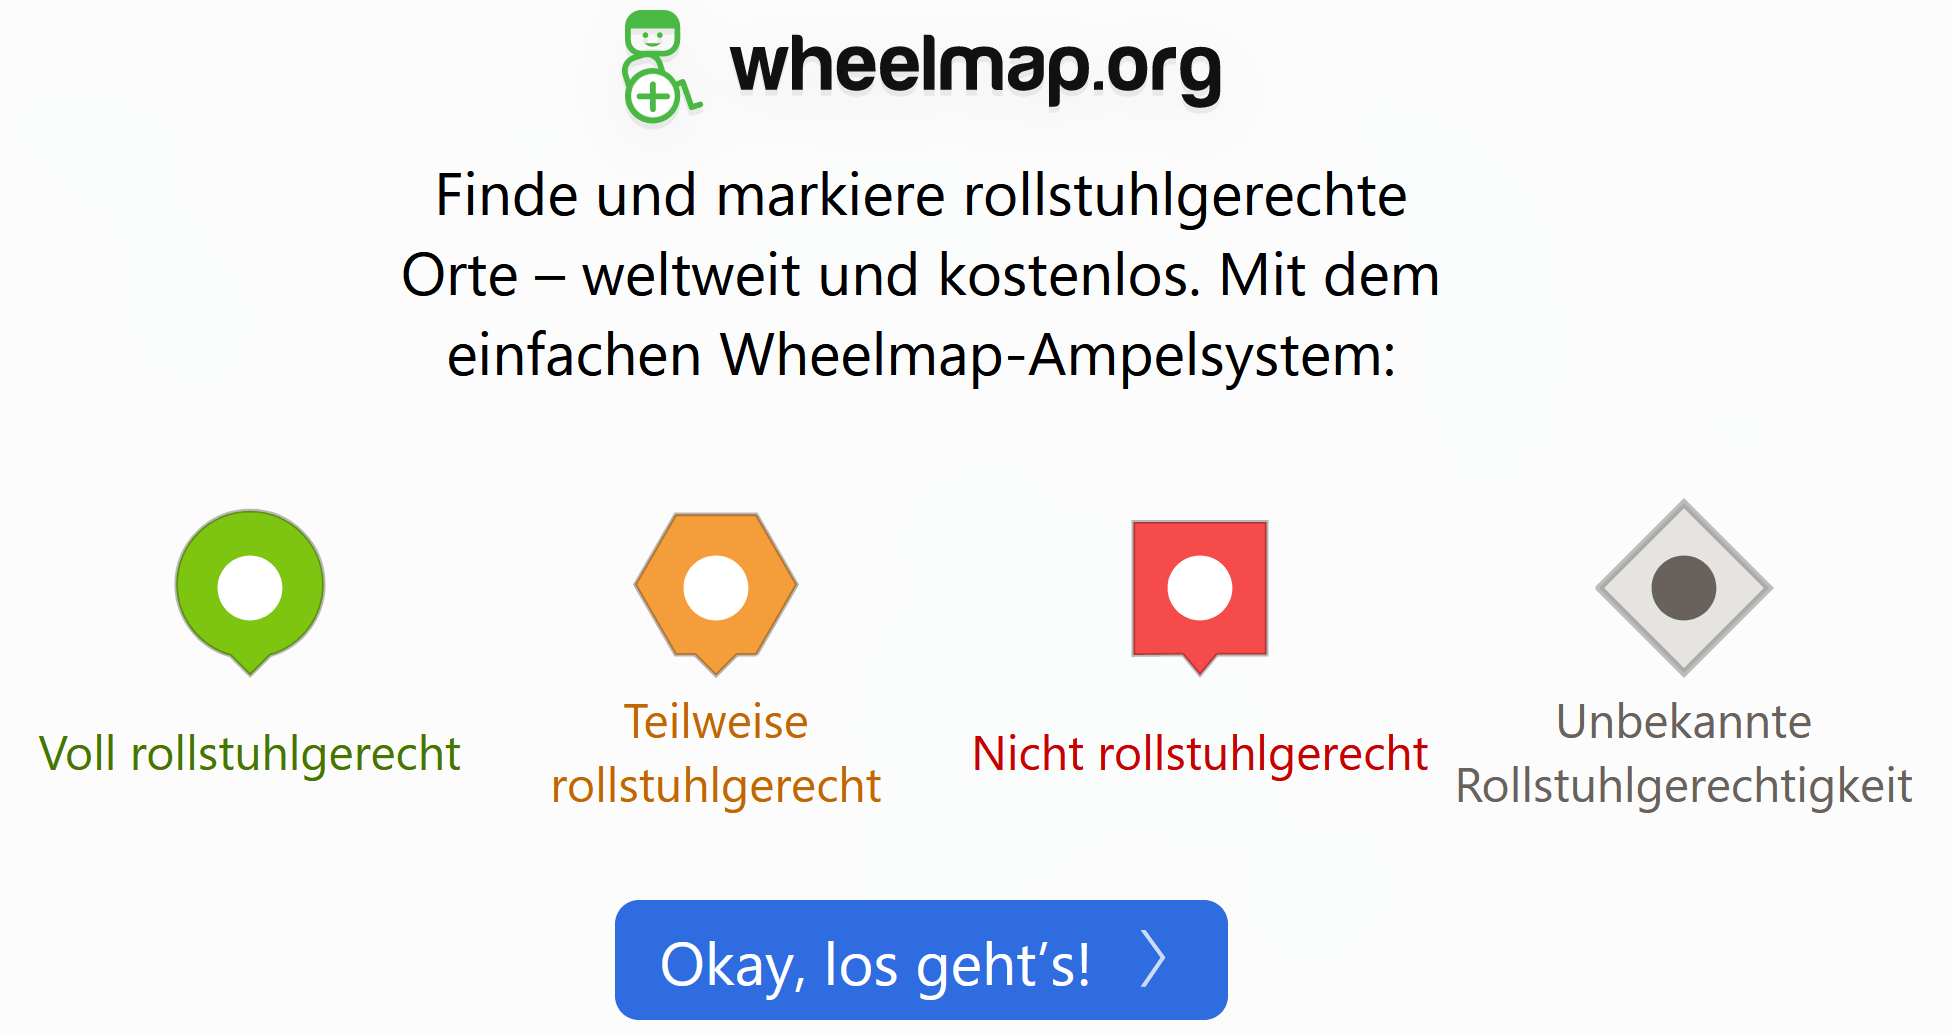 Die Startseite der Wheelmap.org - rollstuhlgerechte Orte finden.